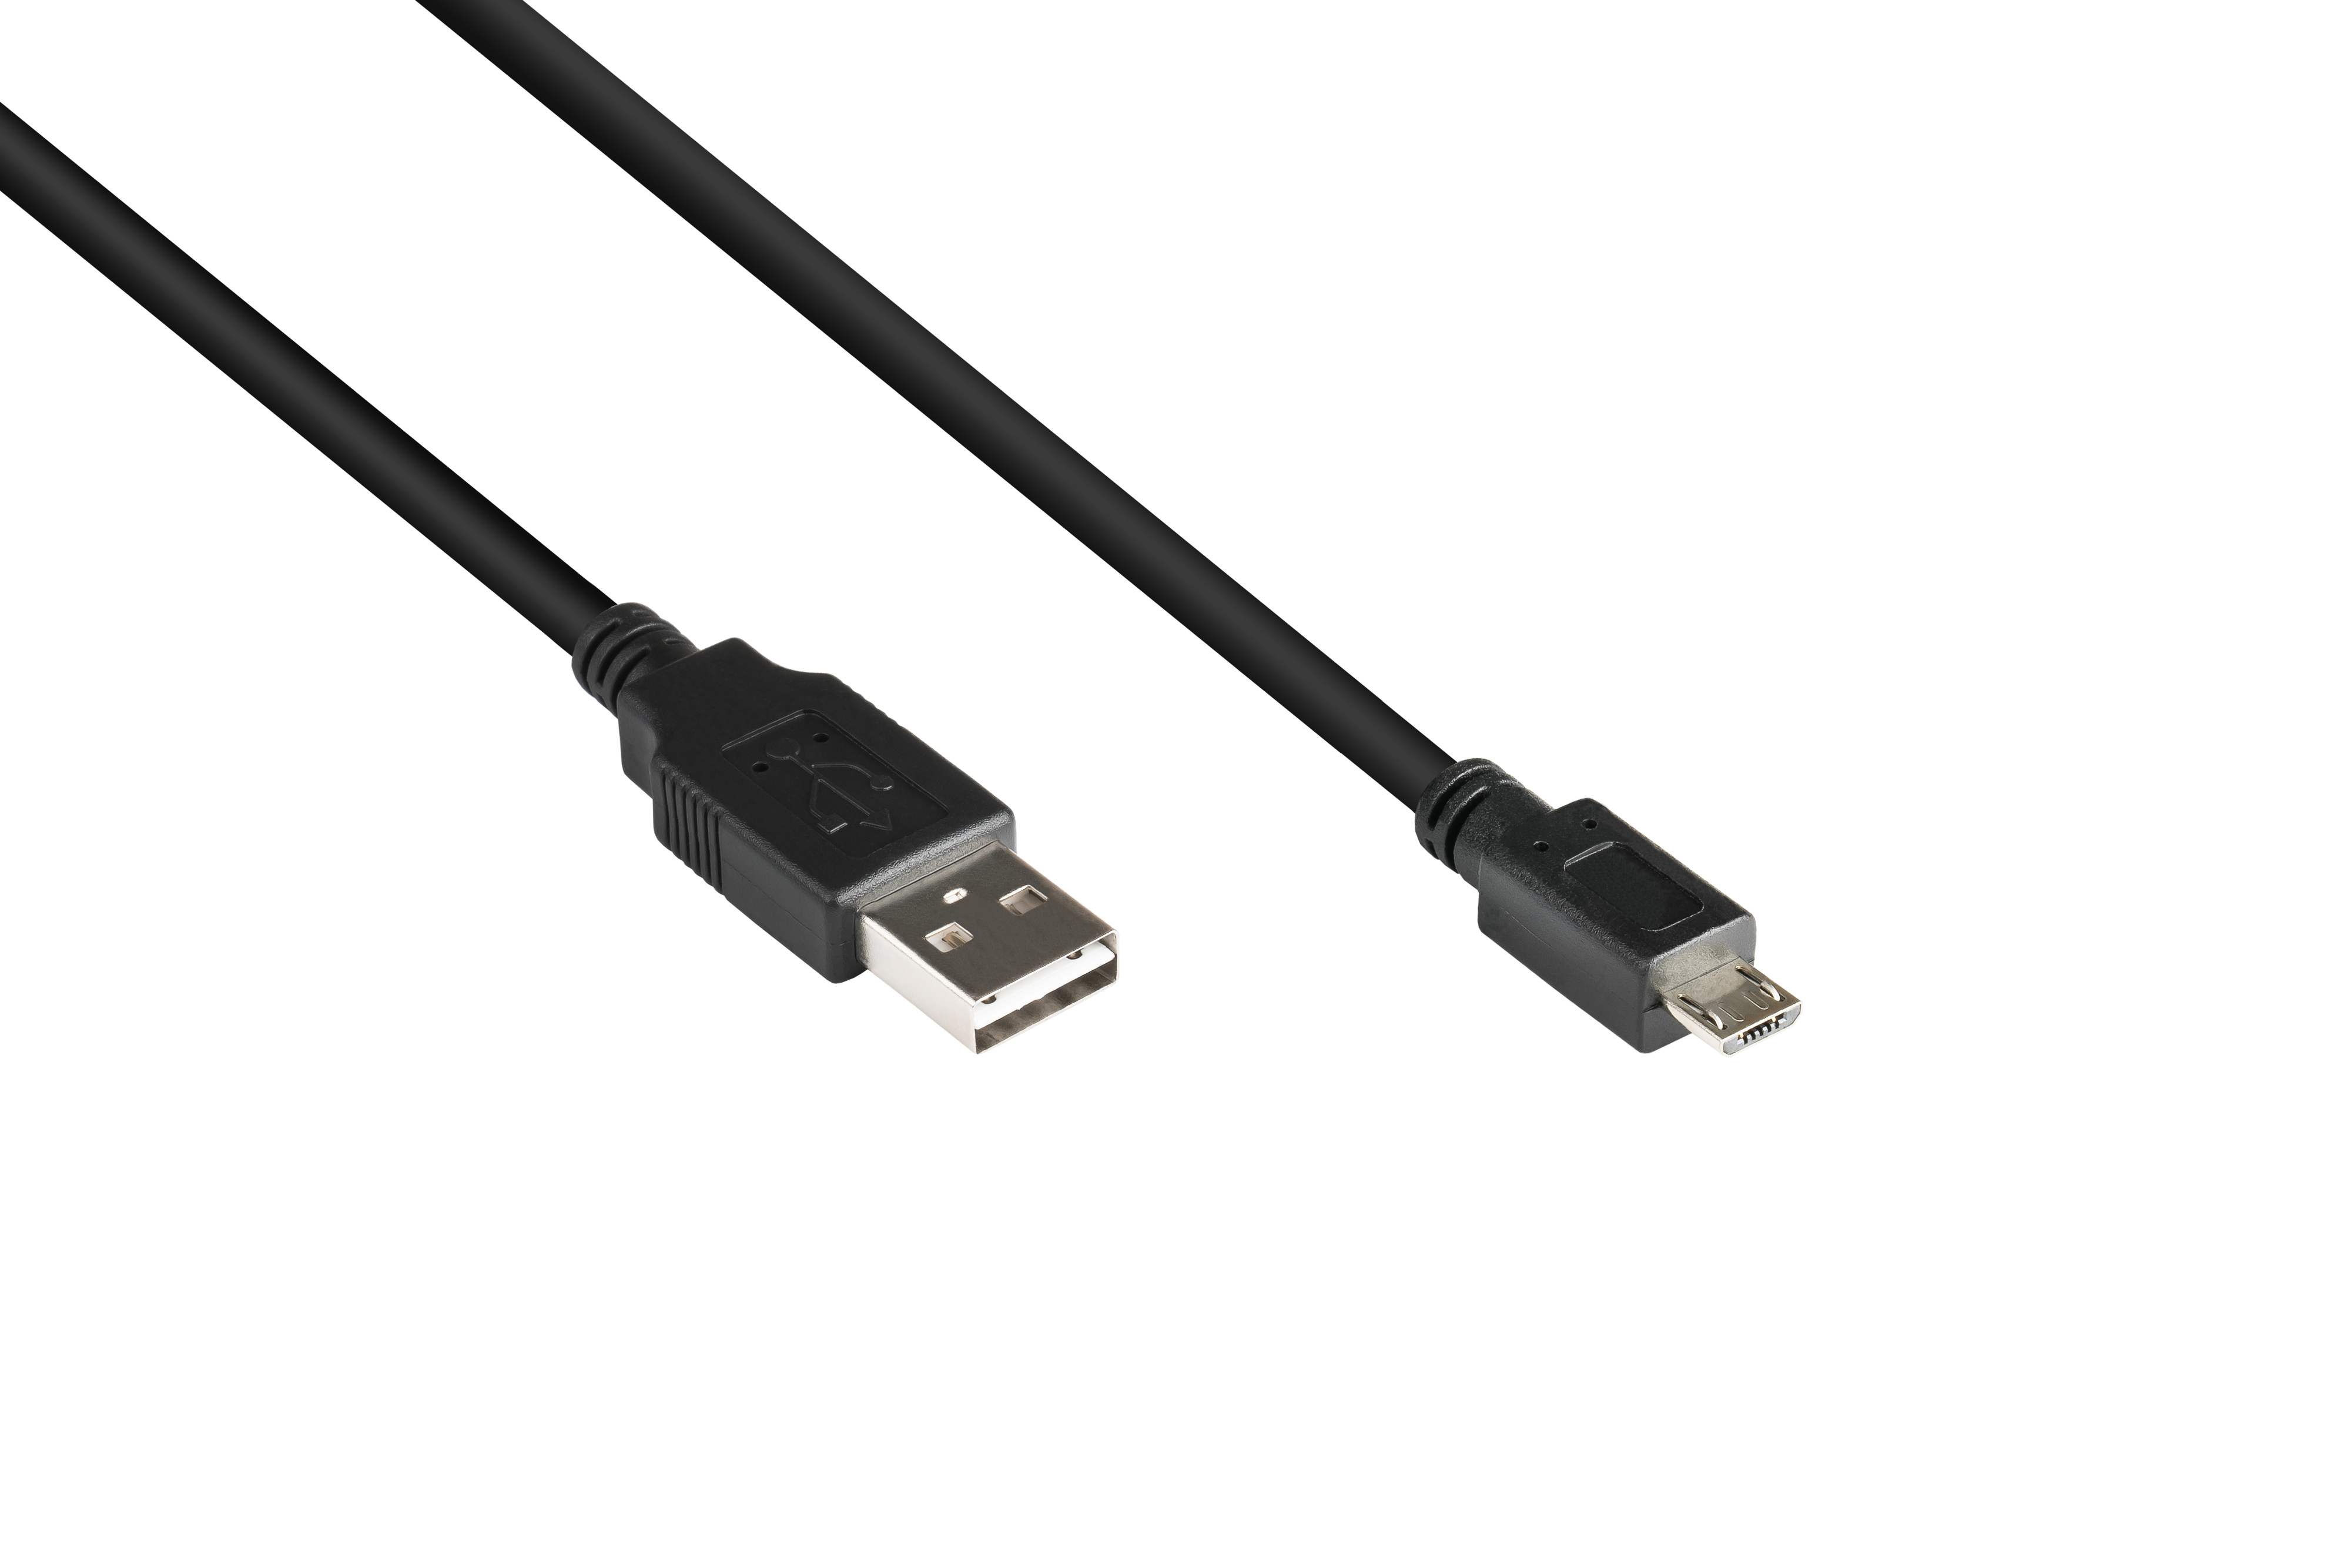 KABELMEISTER USB 2.0 EASY Anschlusskabel schwarz Stecker an Stecker Micro B, A